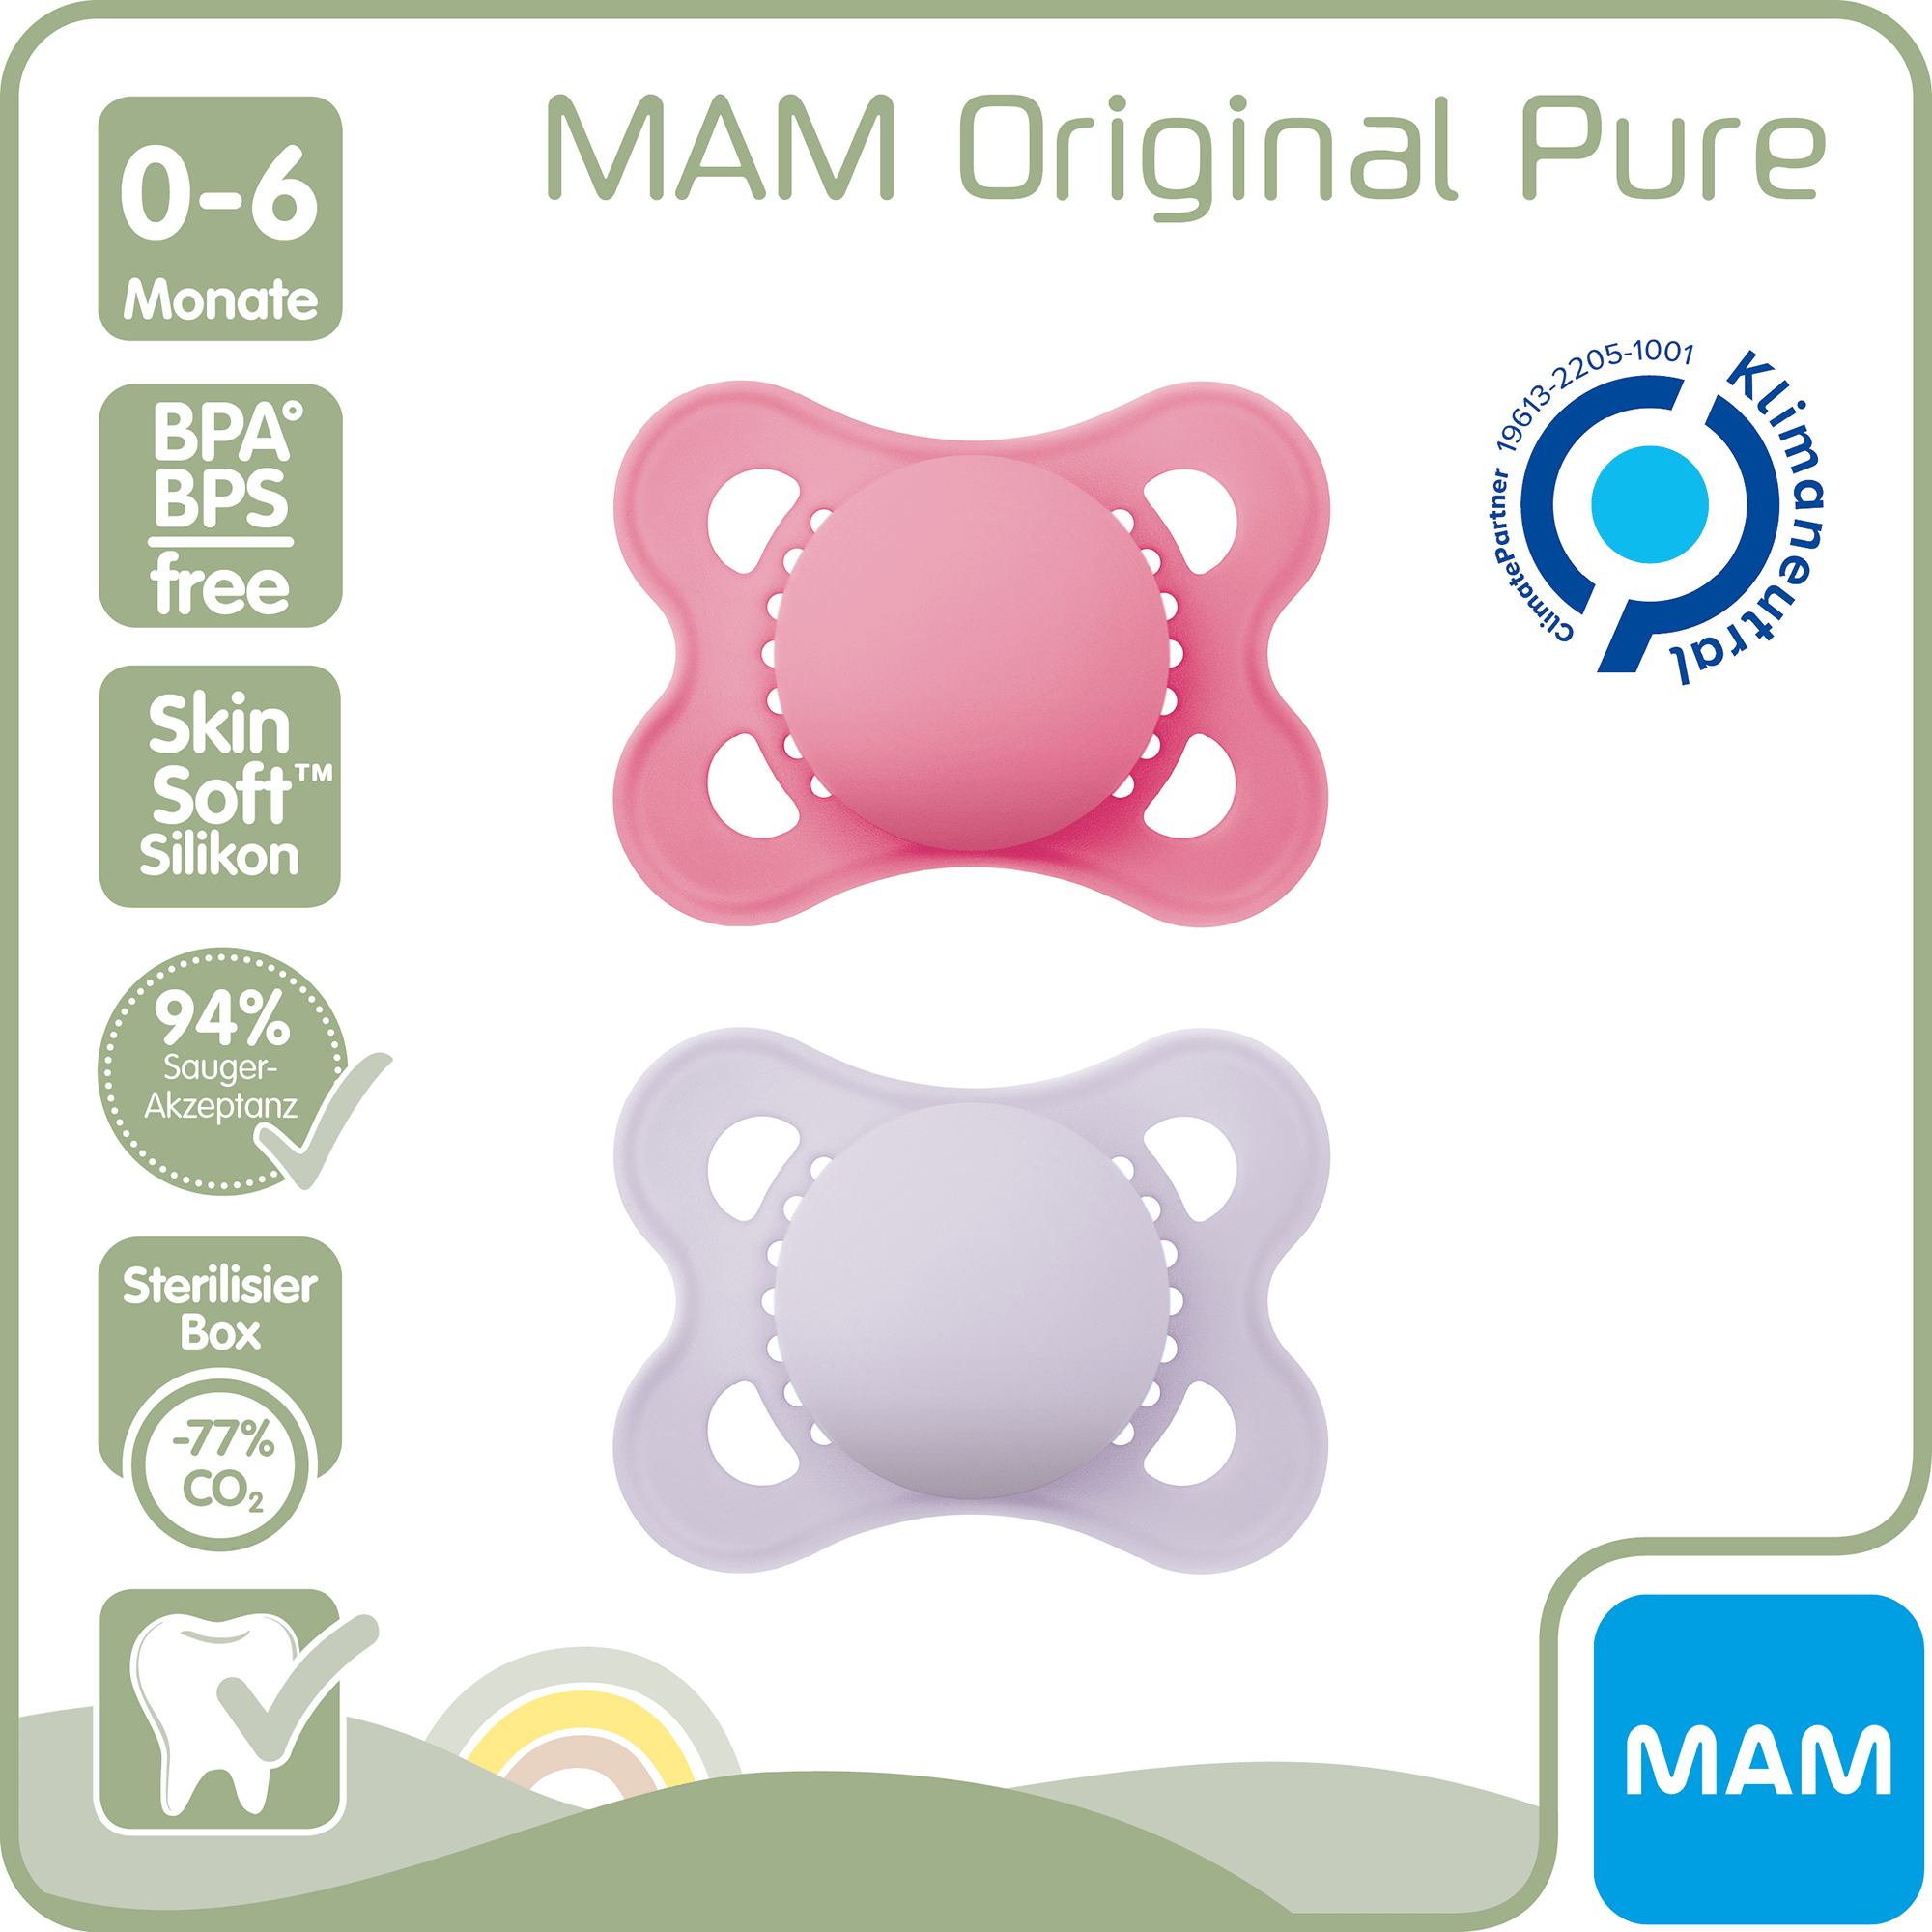 Beruhigungssauger Original matt plain Silikon 0-6 Monate 2 Stück pink/lila MAM Pink 2000583513308 2